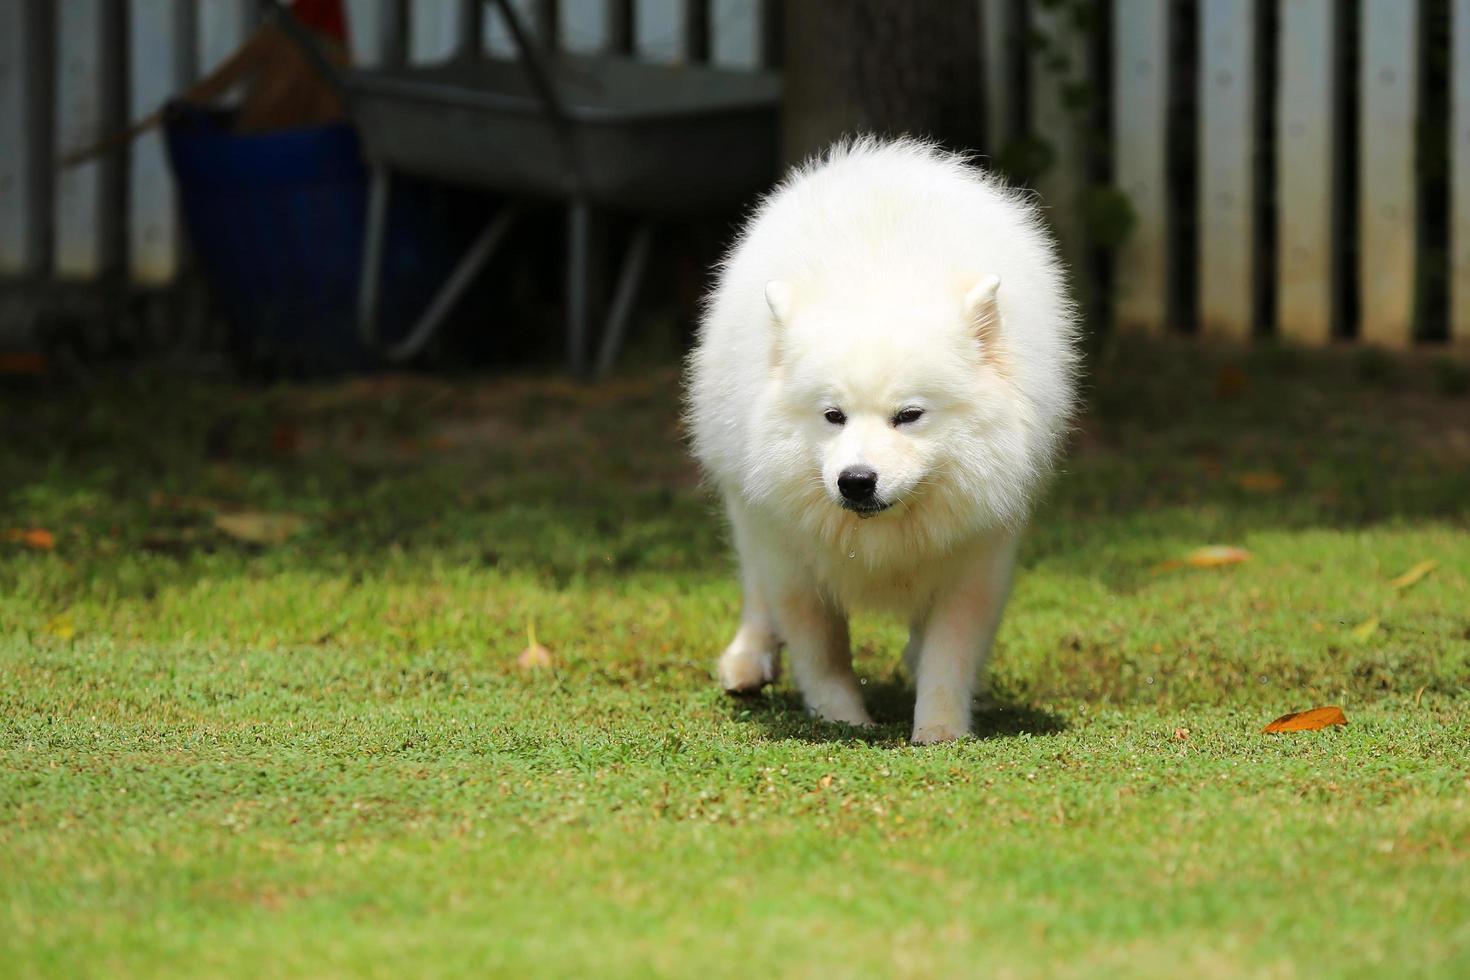 samoieda correndo na grama do parque. cão solto em campo de grama. foto